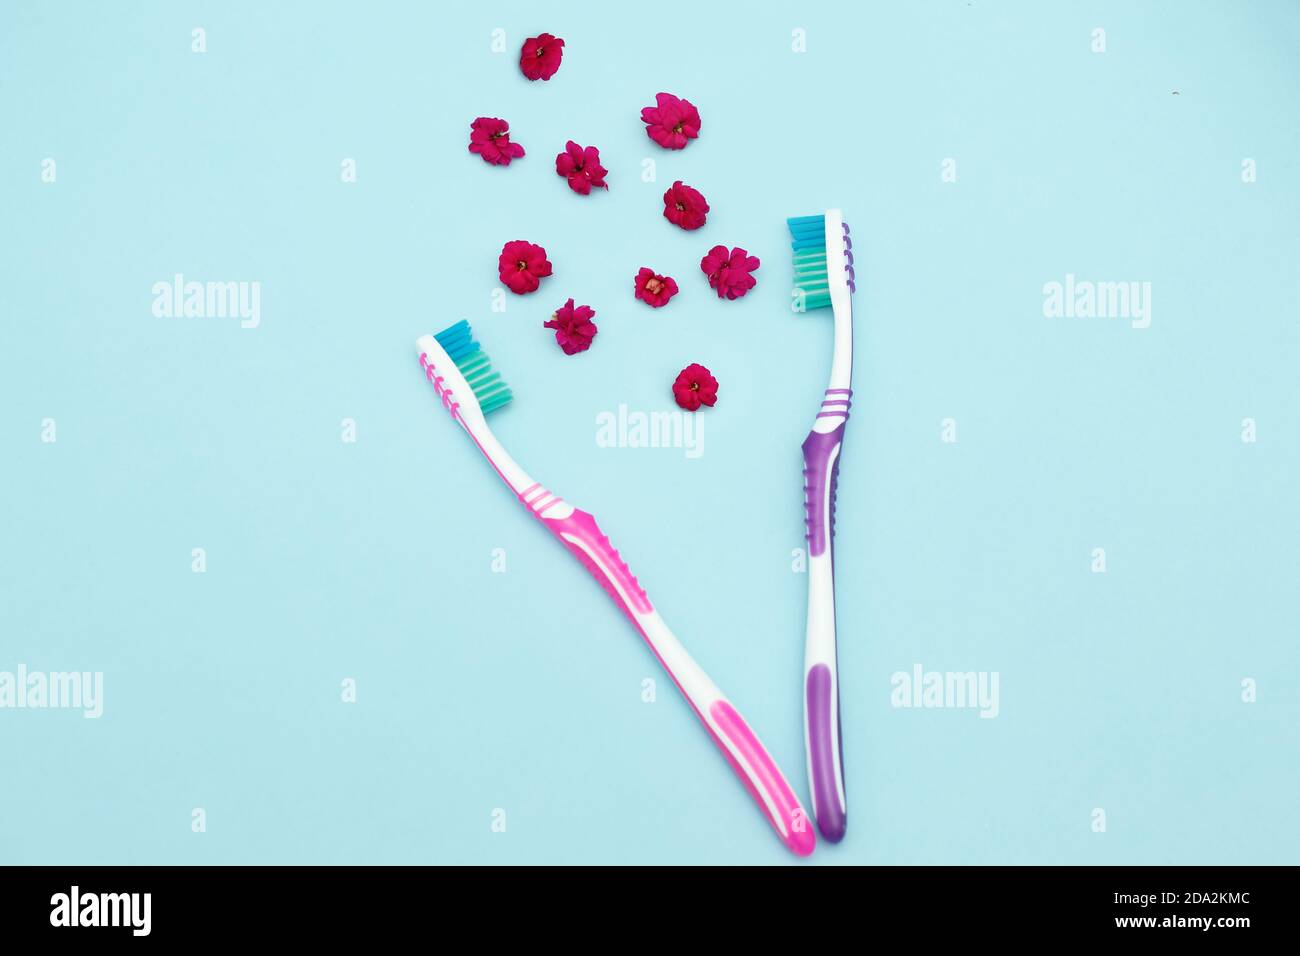 Concetto di respiro fresco. Due spazzolini da denti su sfondo blu, il rapporto di una coppia, tra loro l'aroma dei fiori su sfondo blu Foto Stock